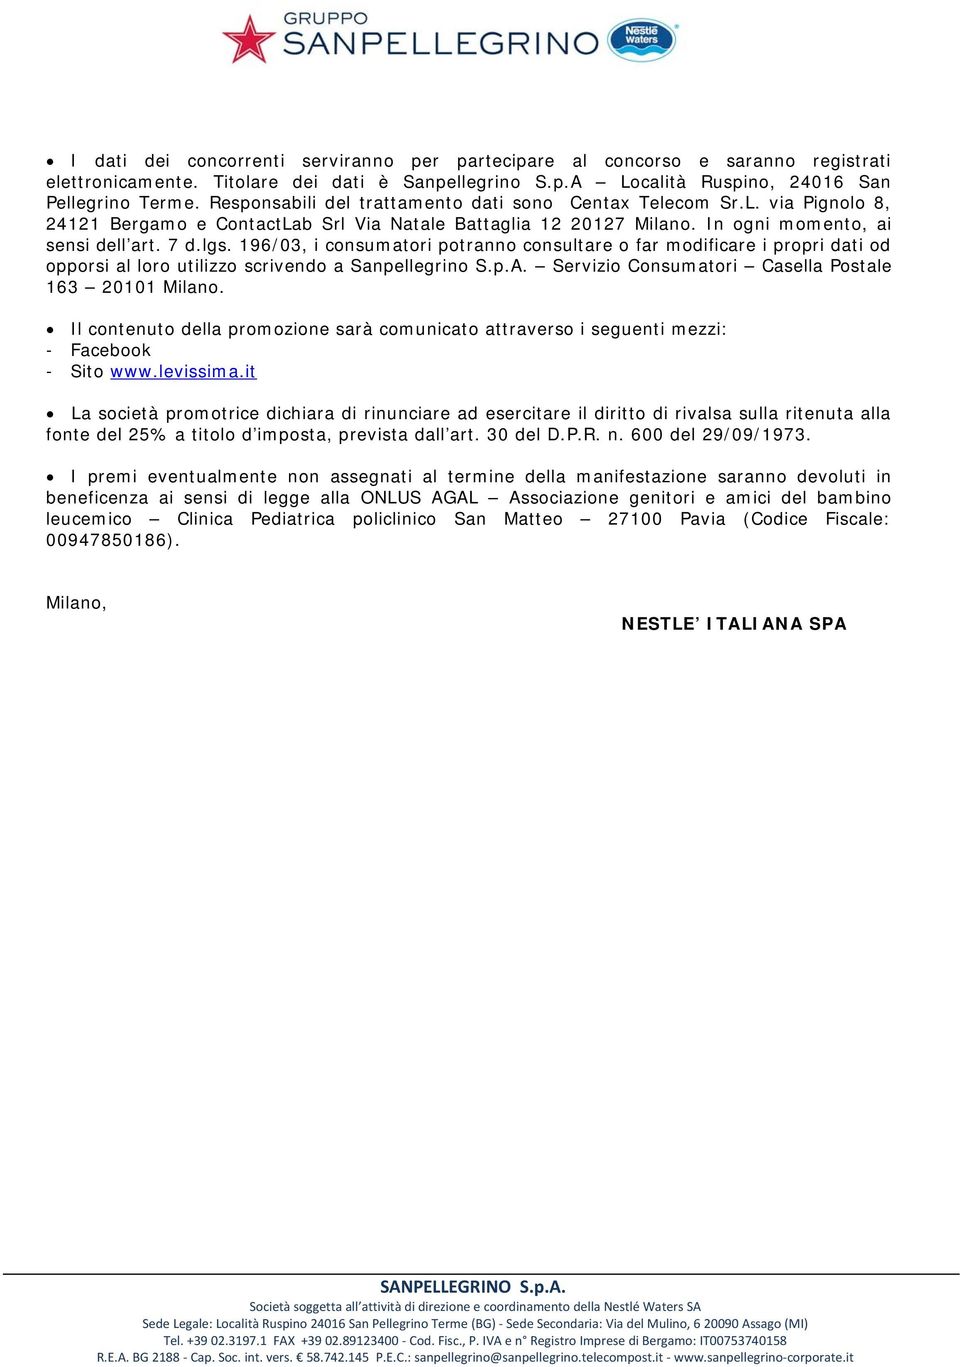 196/03, i consumatori potranno consultare o far modificare i propri dati od opporsi al loro utilizzo scrivendo a Sanpellegrino S.p.A. Servizio Consumatori Casella Postale 163 20101 Milano.